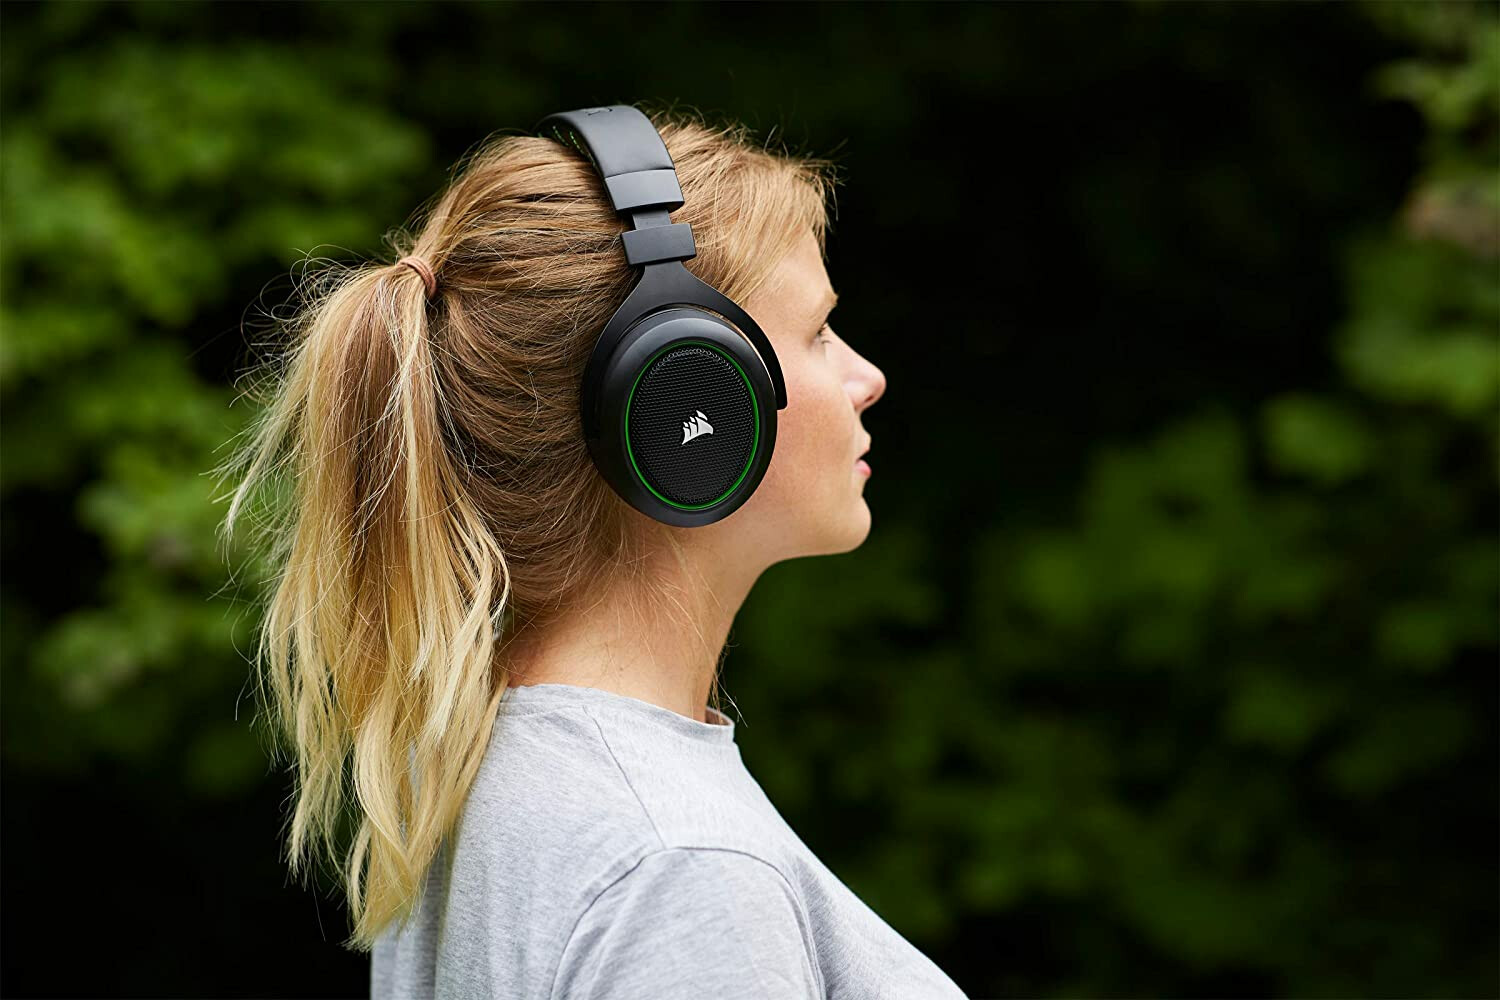 Corsair HS50 Pro Stereo Over-ear Headset